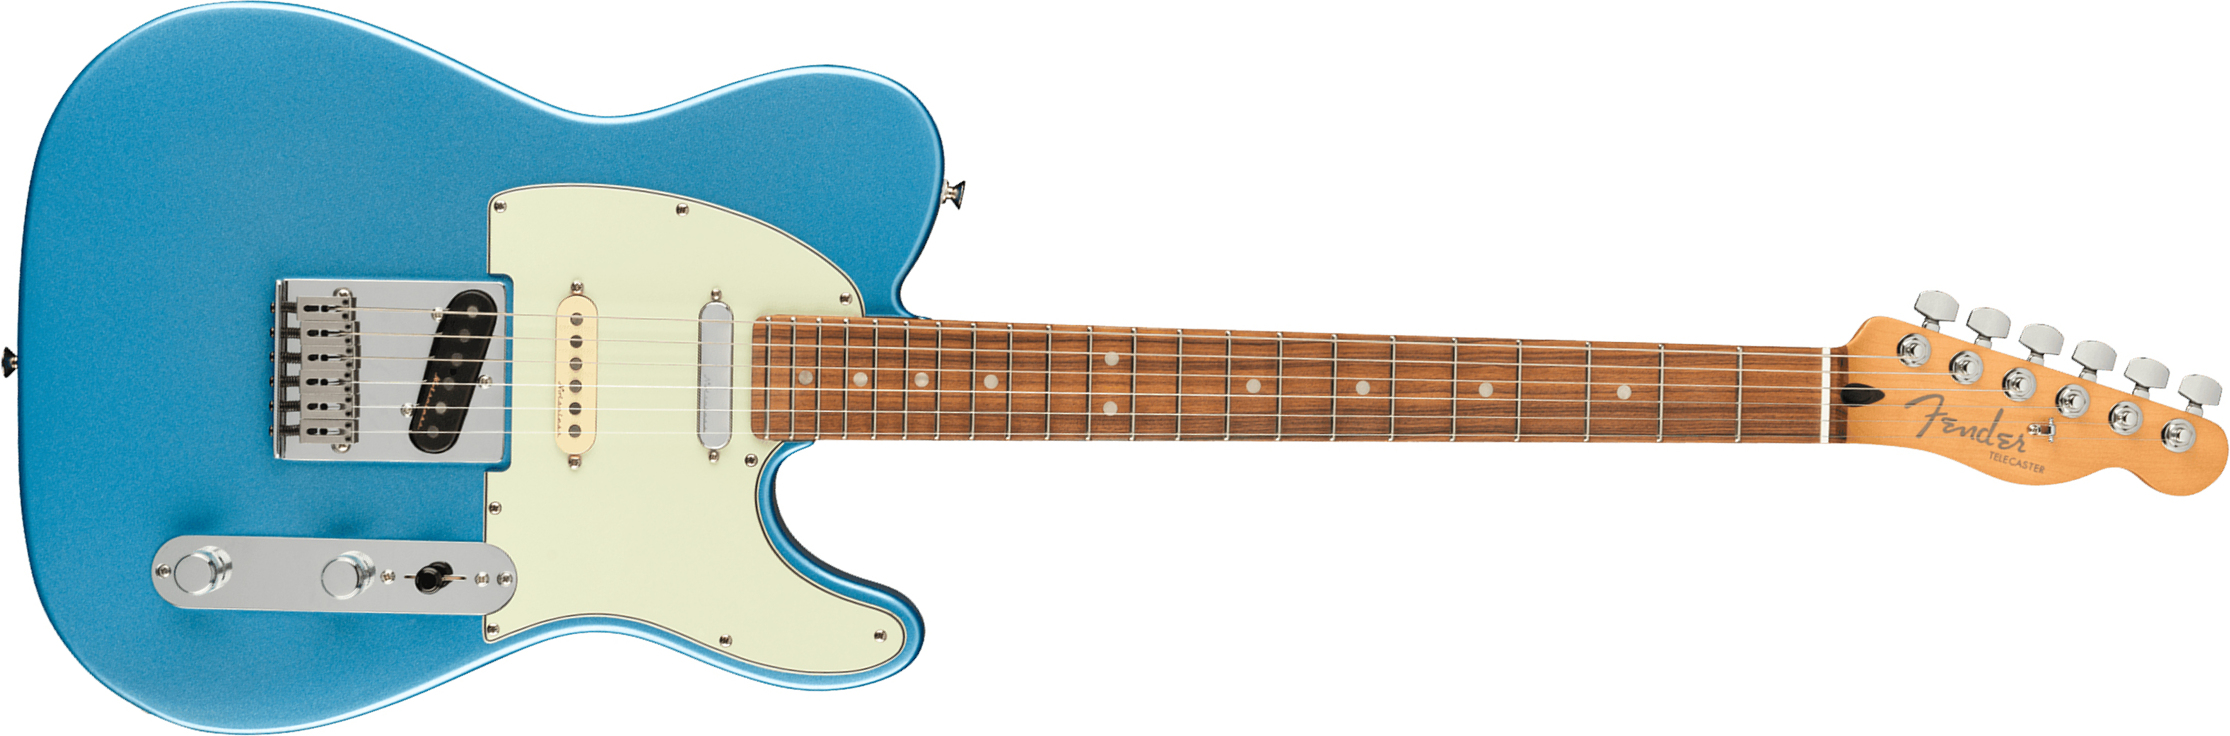 Fender Tele Player Plus Nashville Mex 3s Ht Pf - Opal Spark - Tel shape electric guitar - Main picture